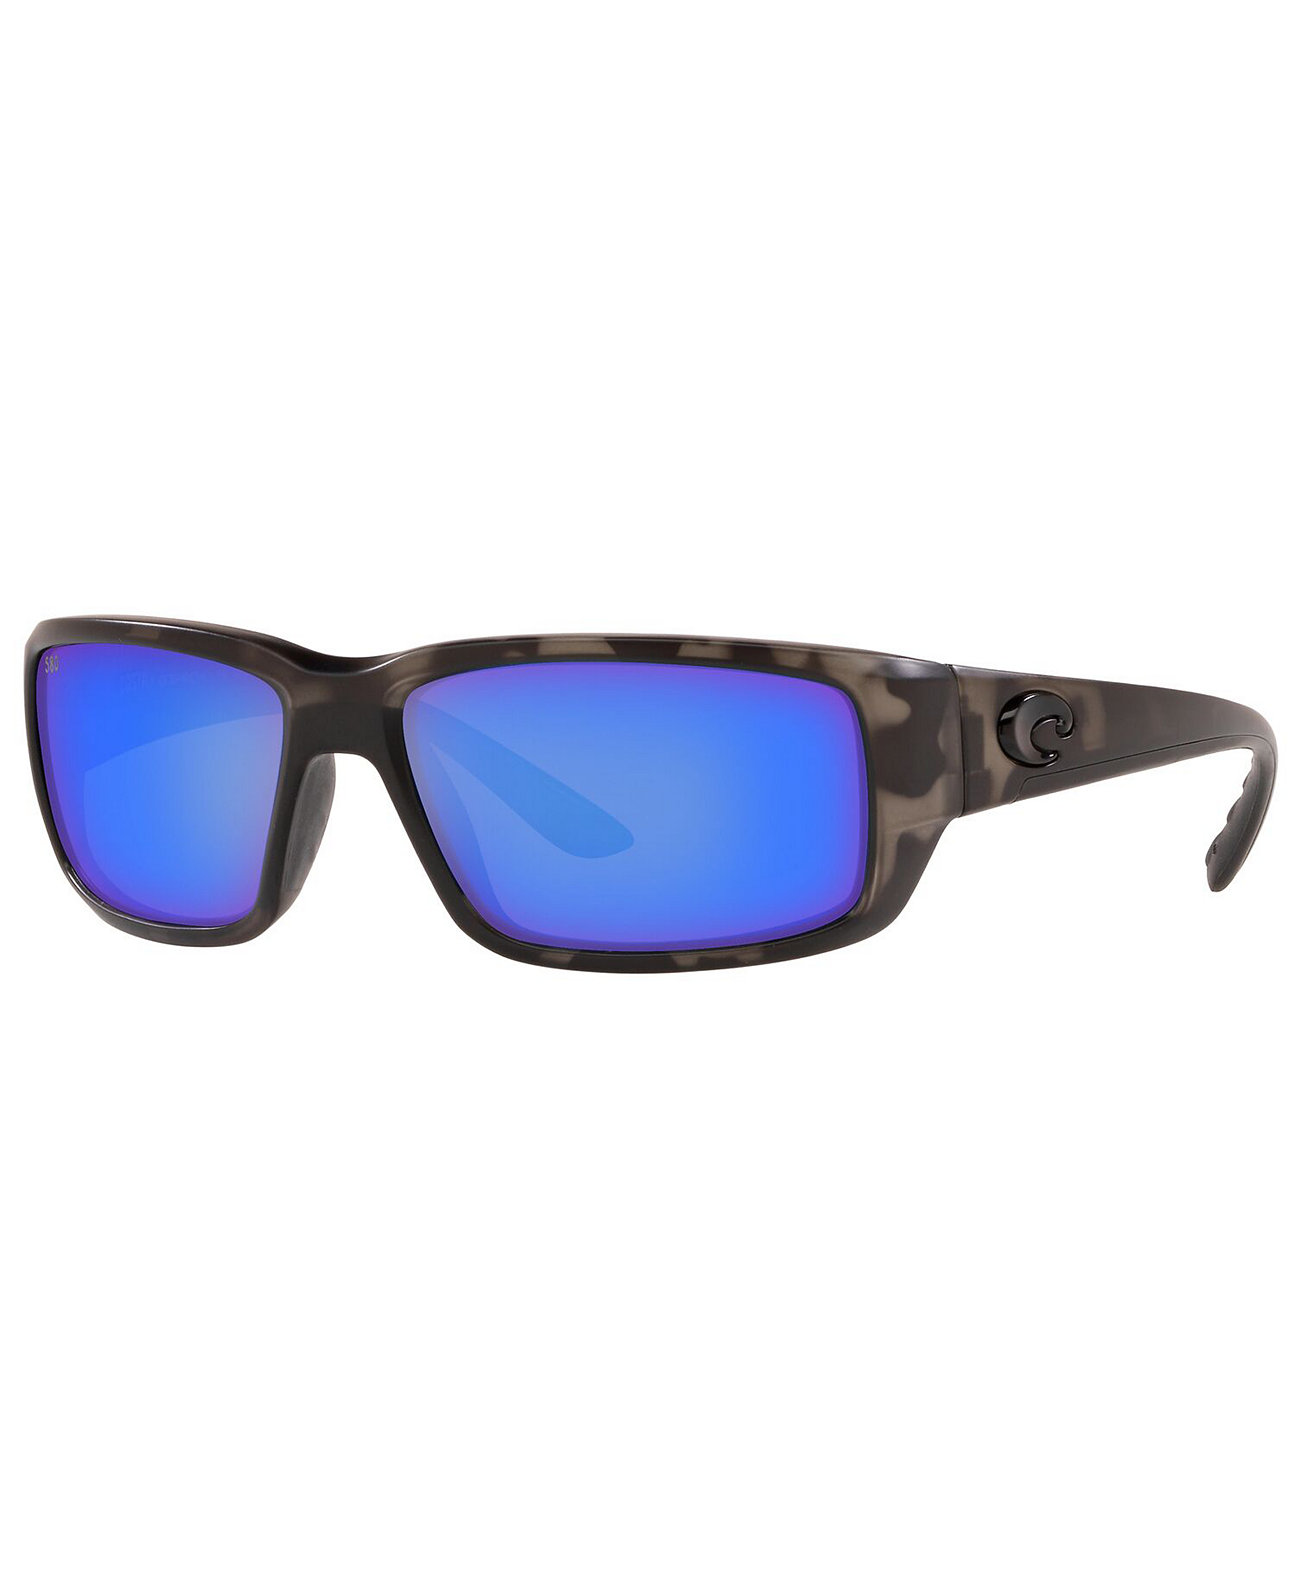 Мужские поляризованные солнцезащитные очки Fantail COSTA DEL MAR